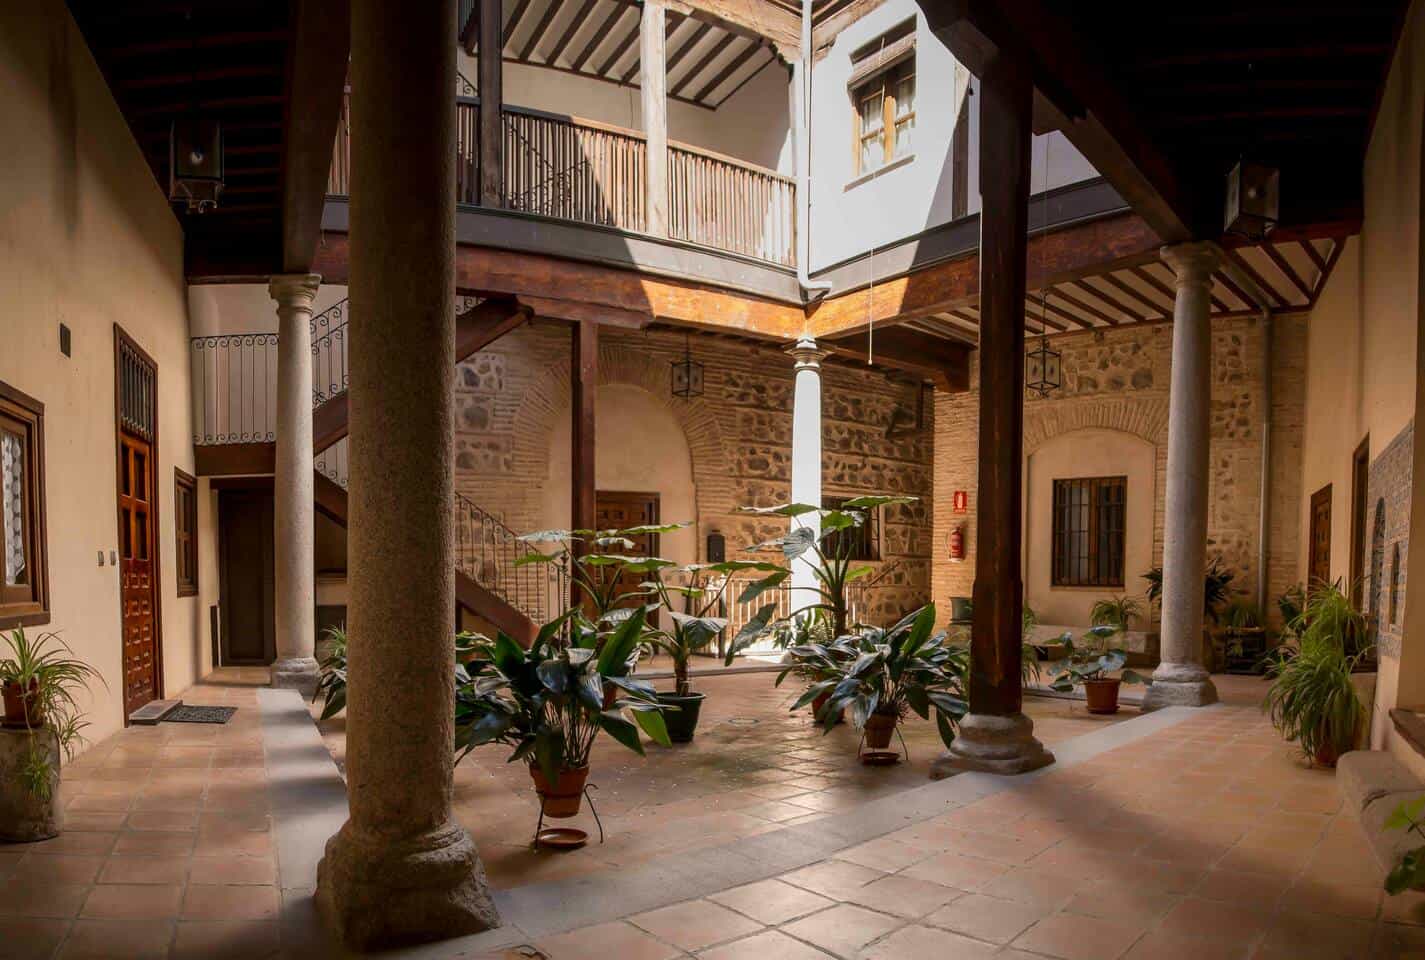 Image of Airbnb rental in Toledo, Spain